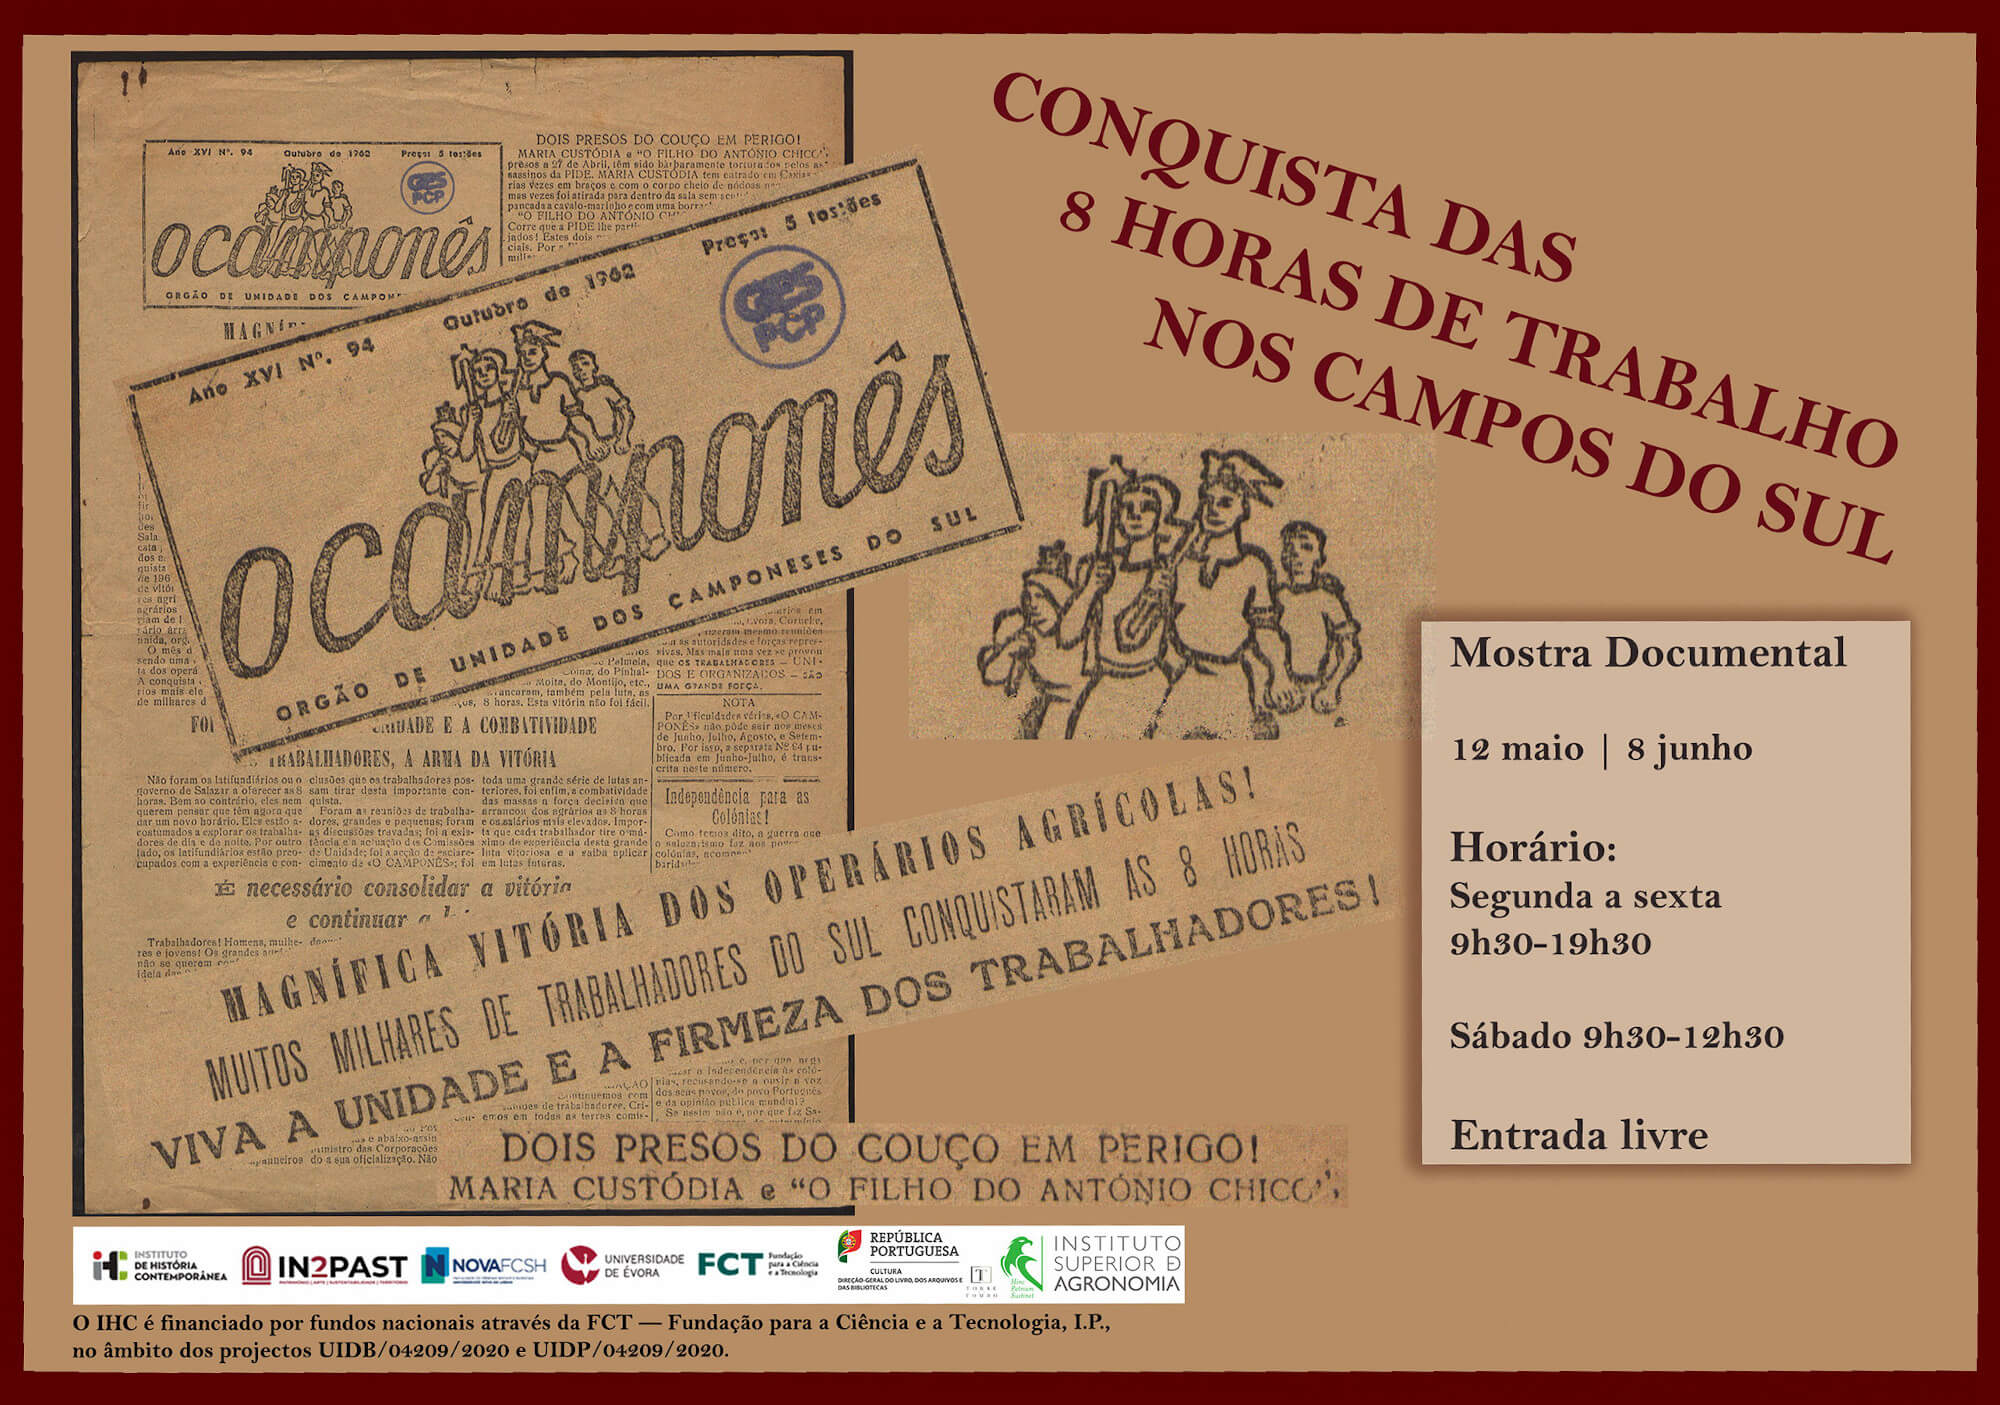 Cartaz da mostra documental "Conquista das 8 Horas de Trabalho nos Campos do Sul". Arquivo Nacional da Torre do Tombo, Lisboa, 12 de Maio a 8 de Junho de 2022